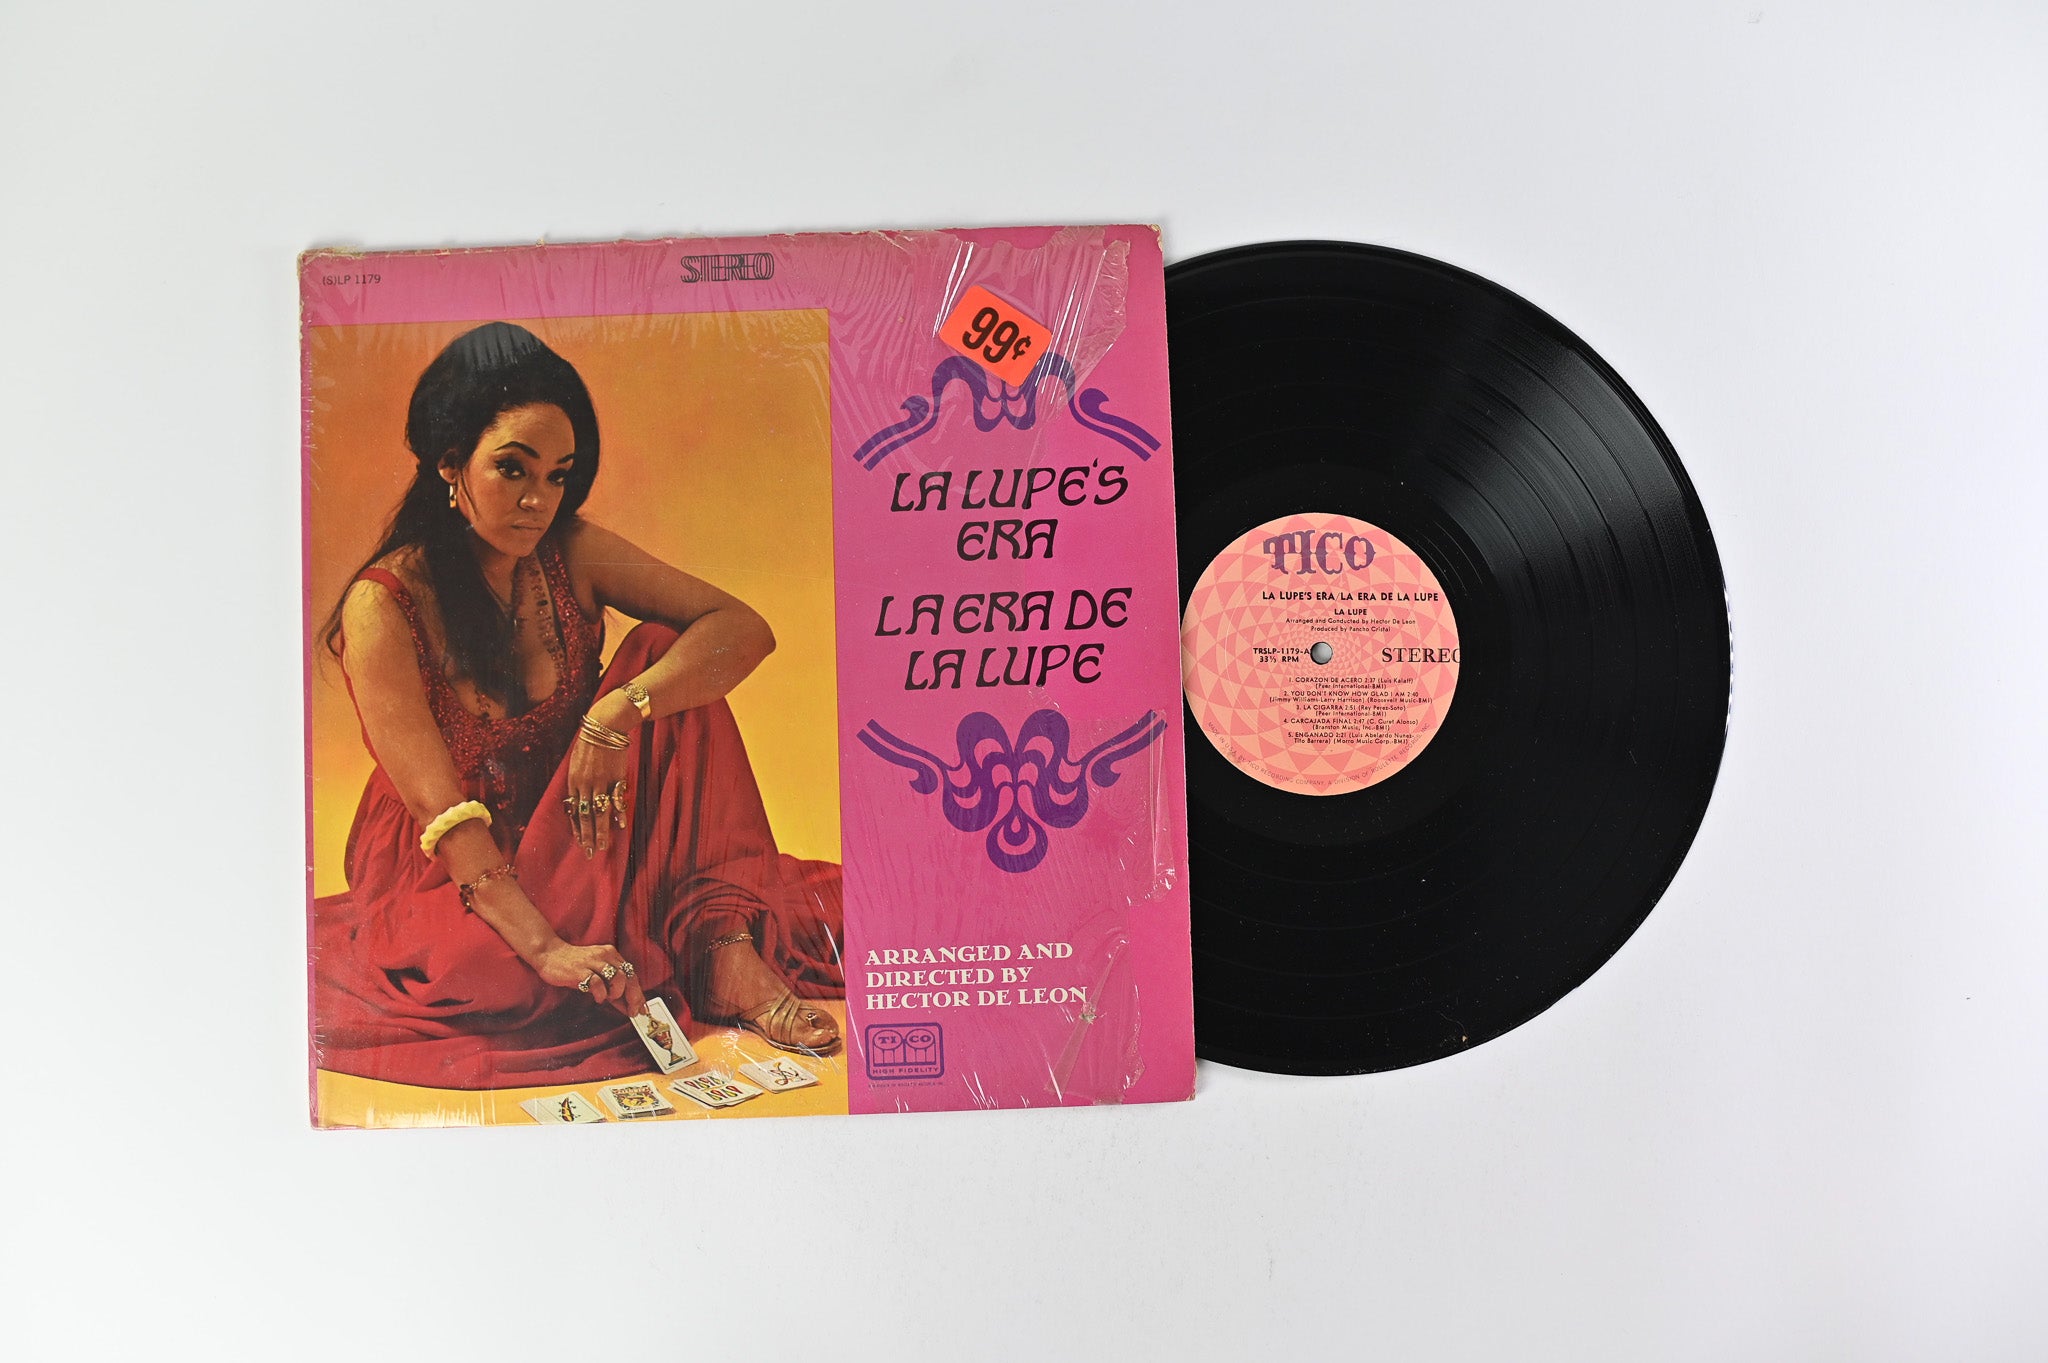 La Lupe - La Lupe's Era / La Era De La Lupe on Tico Records